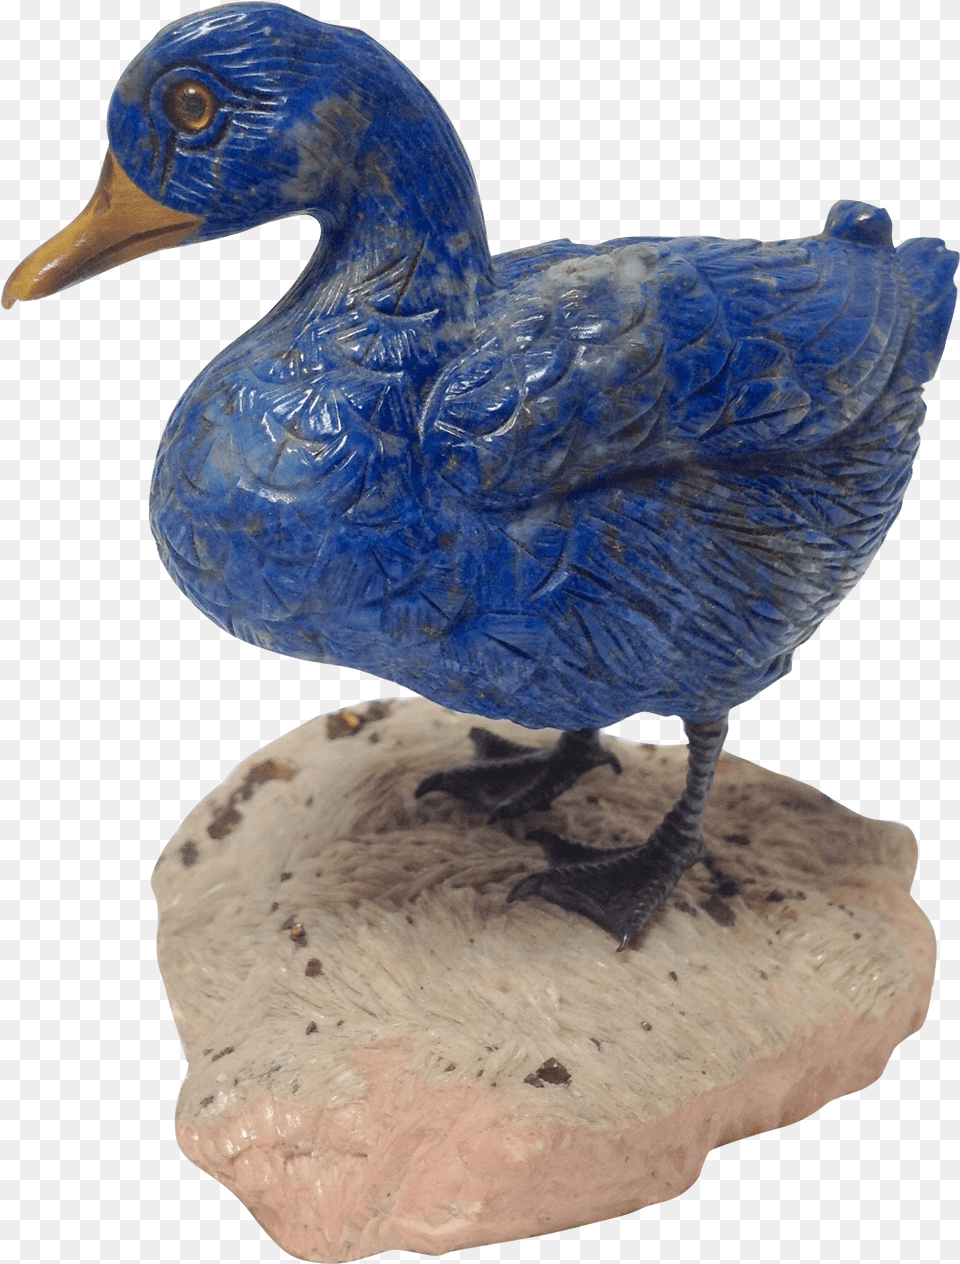 Carved Lapis Lazuli Duck Figurine Tiger Eye Beak Rock, Animal, Bird, Anseriformes, Waterfowl Free Png Download